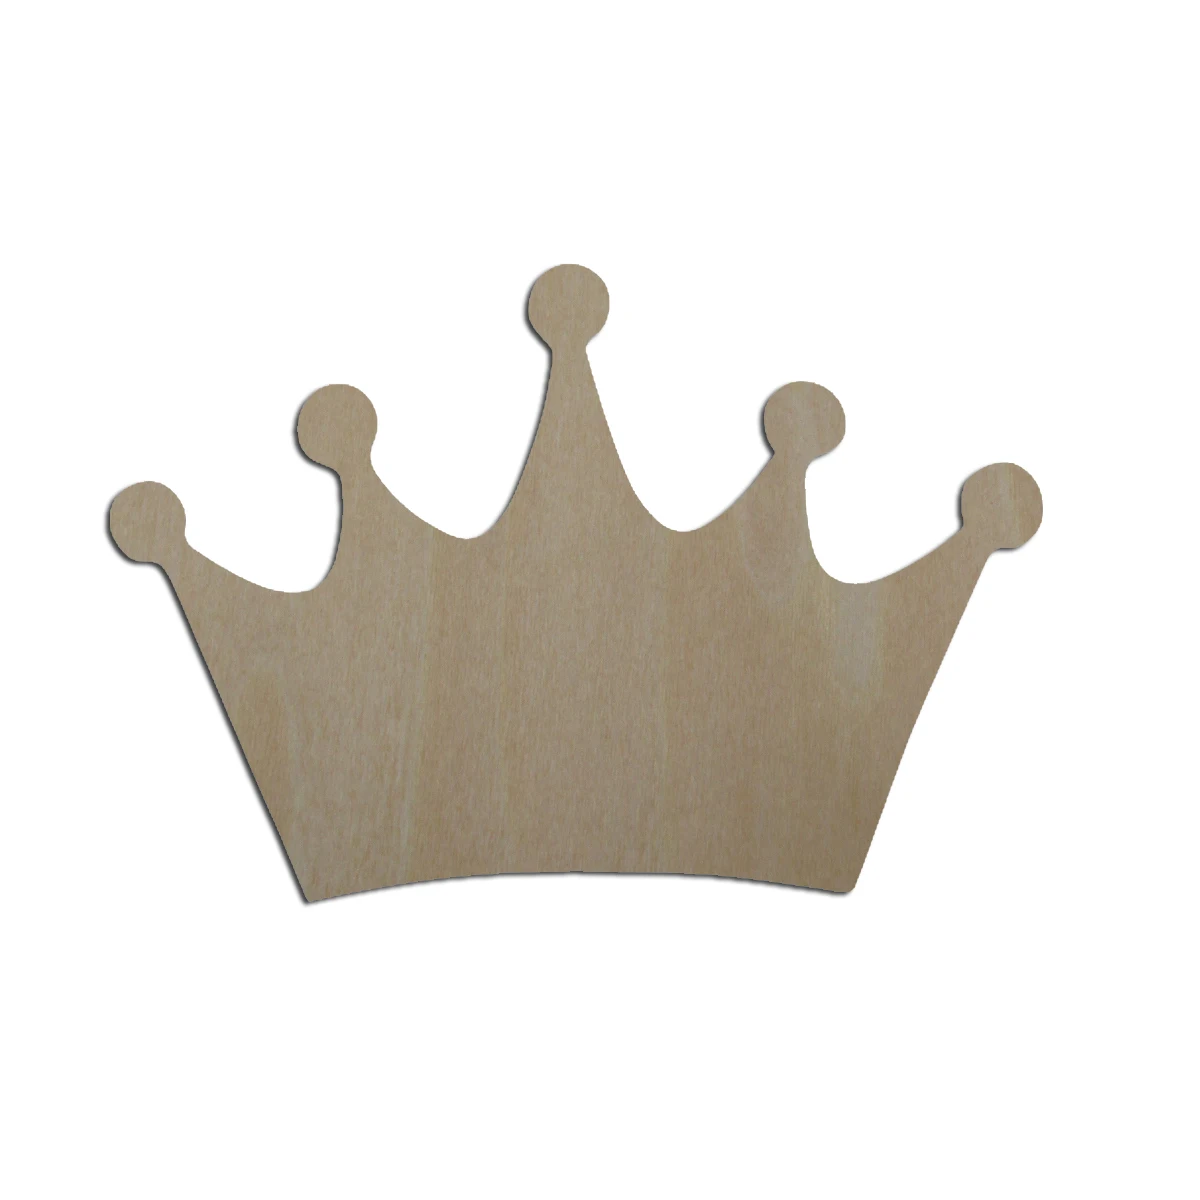 символы короны для пубг фото 2